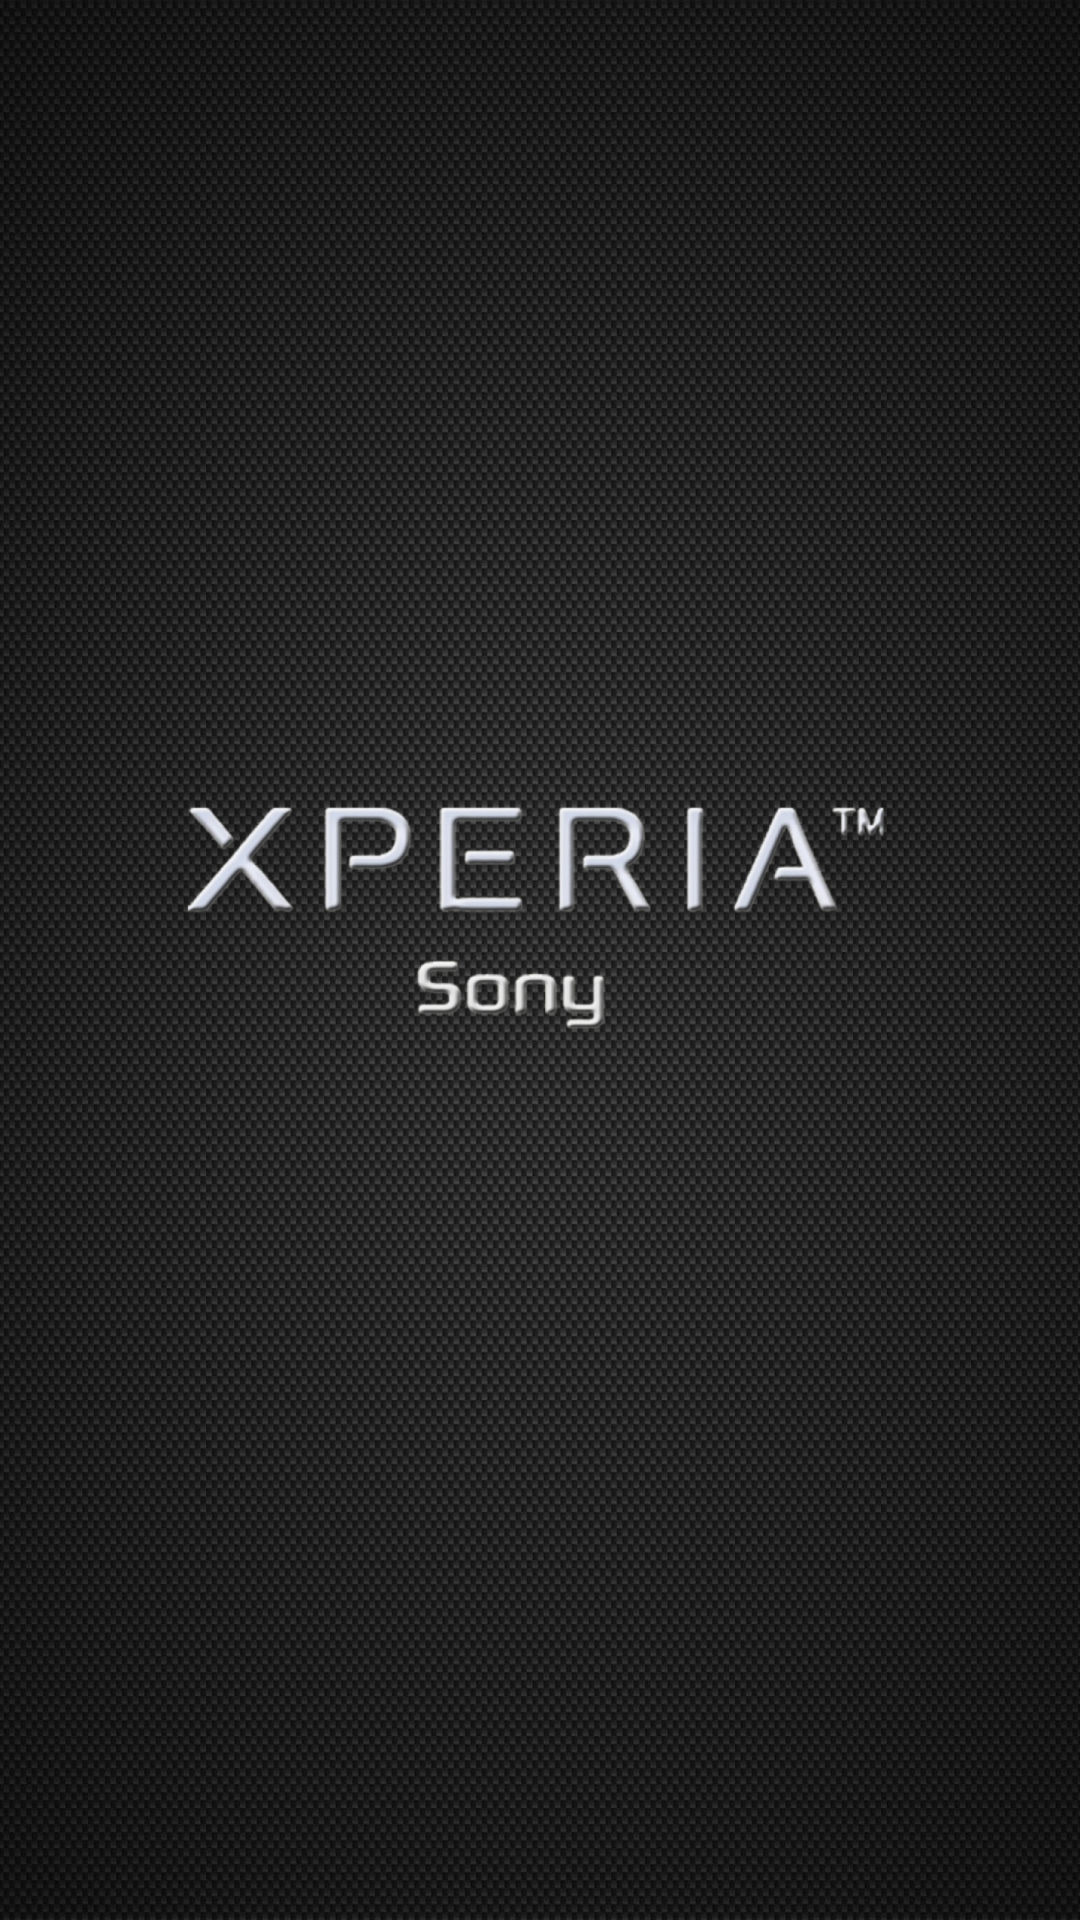 Sfondi Sony Xperia 1080x1920